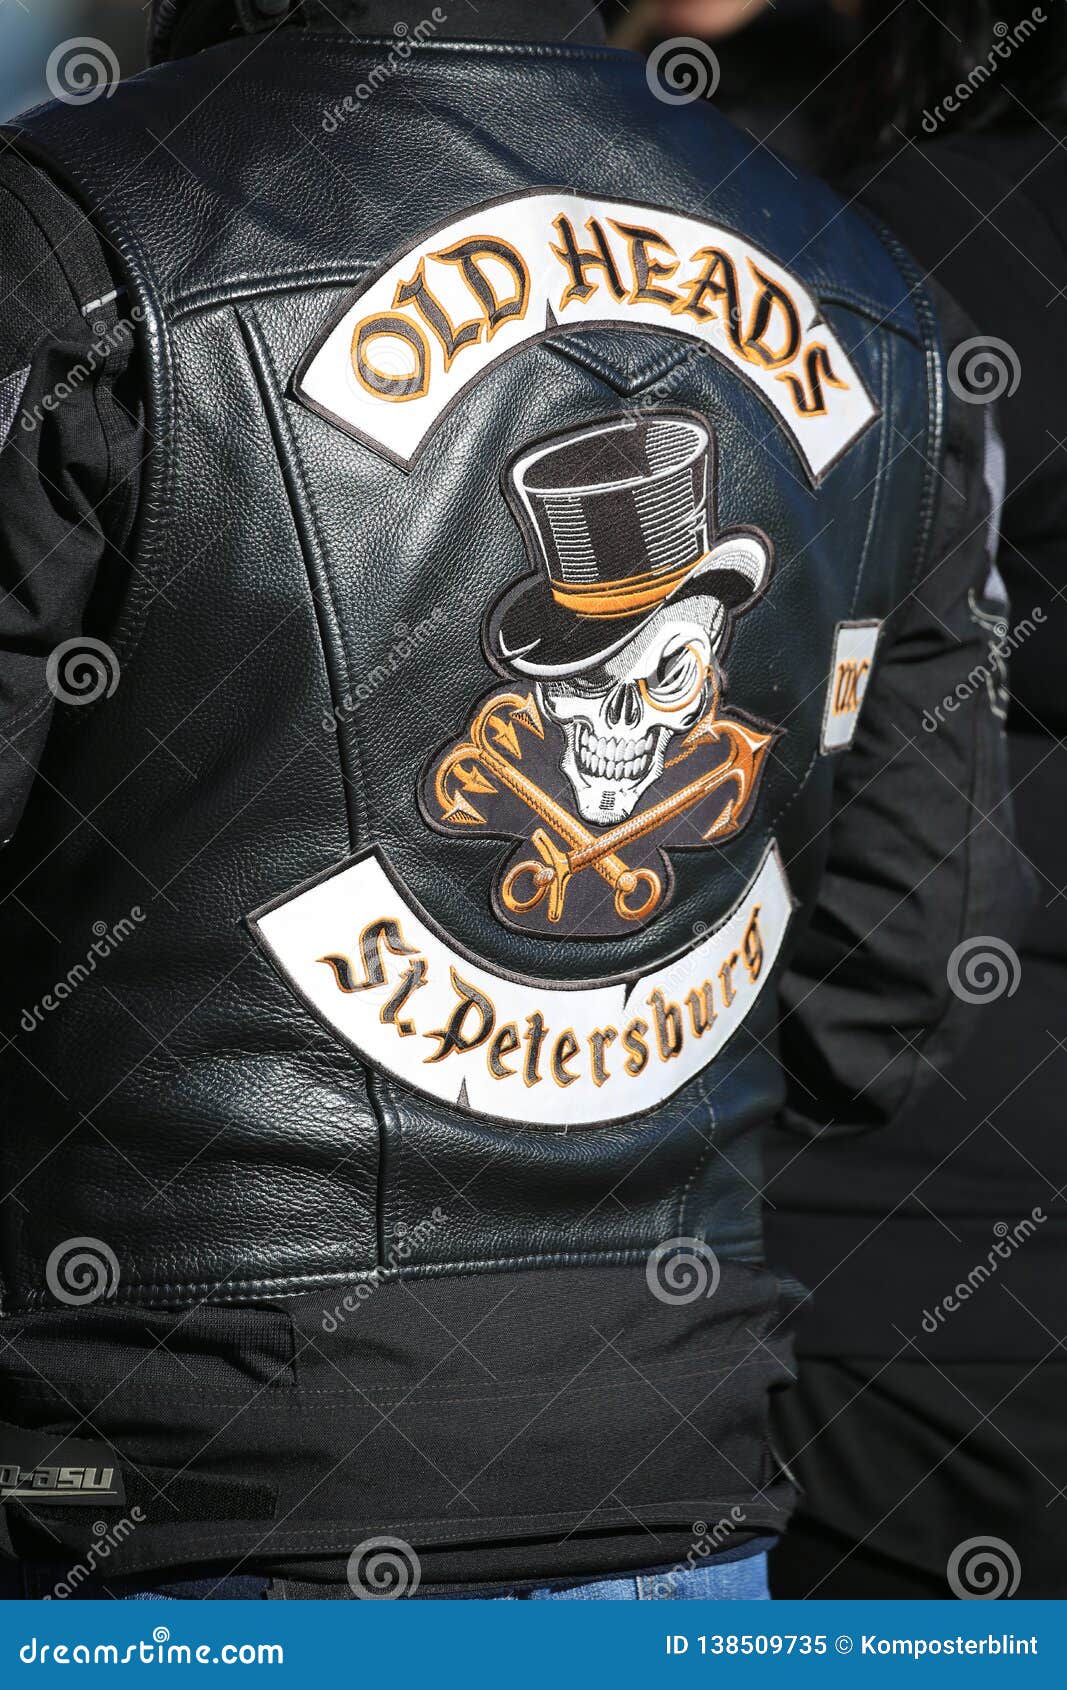 Rare 1980's Paulaner Munchen Beer Hipster Jacket Biker Vest Patch Crest A 